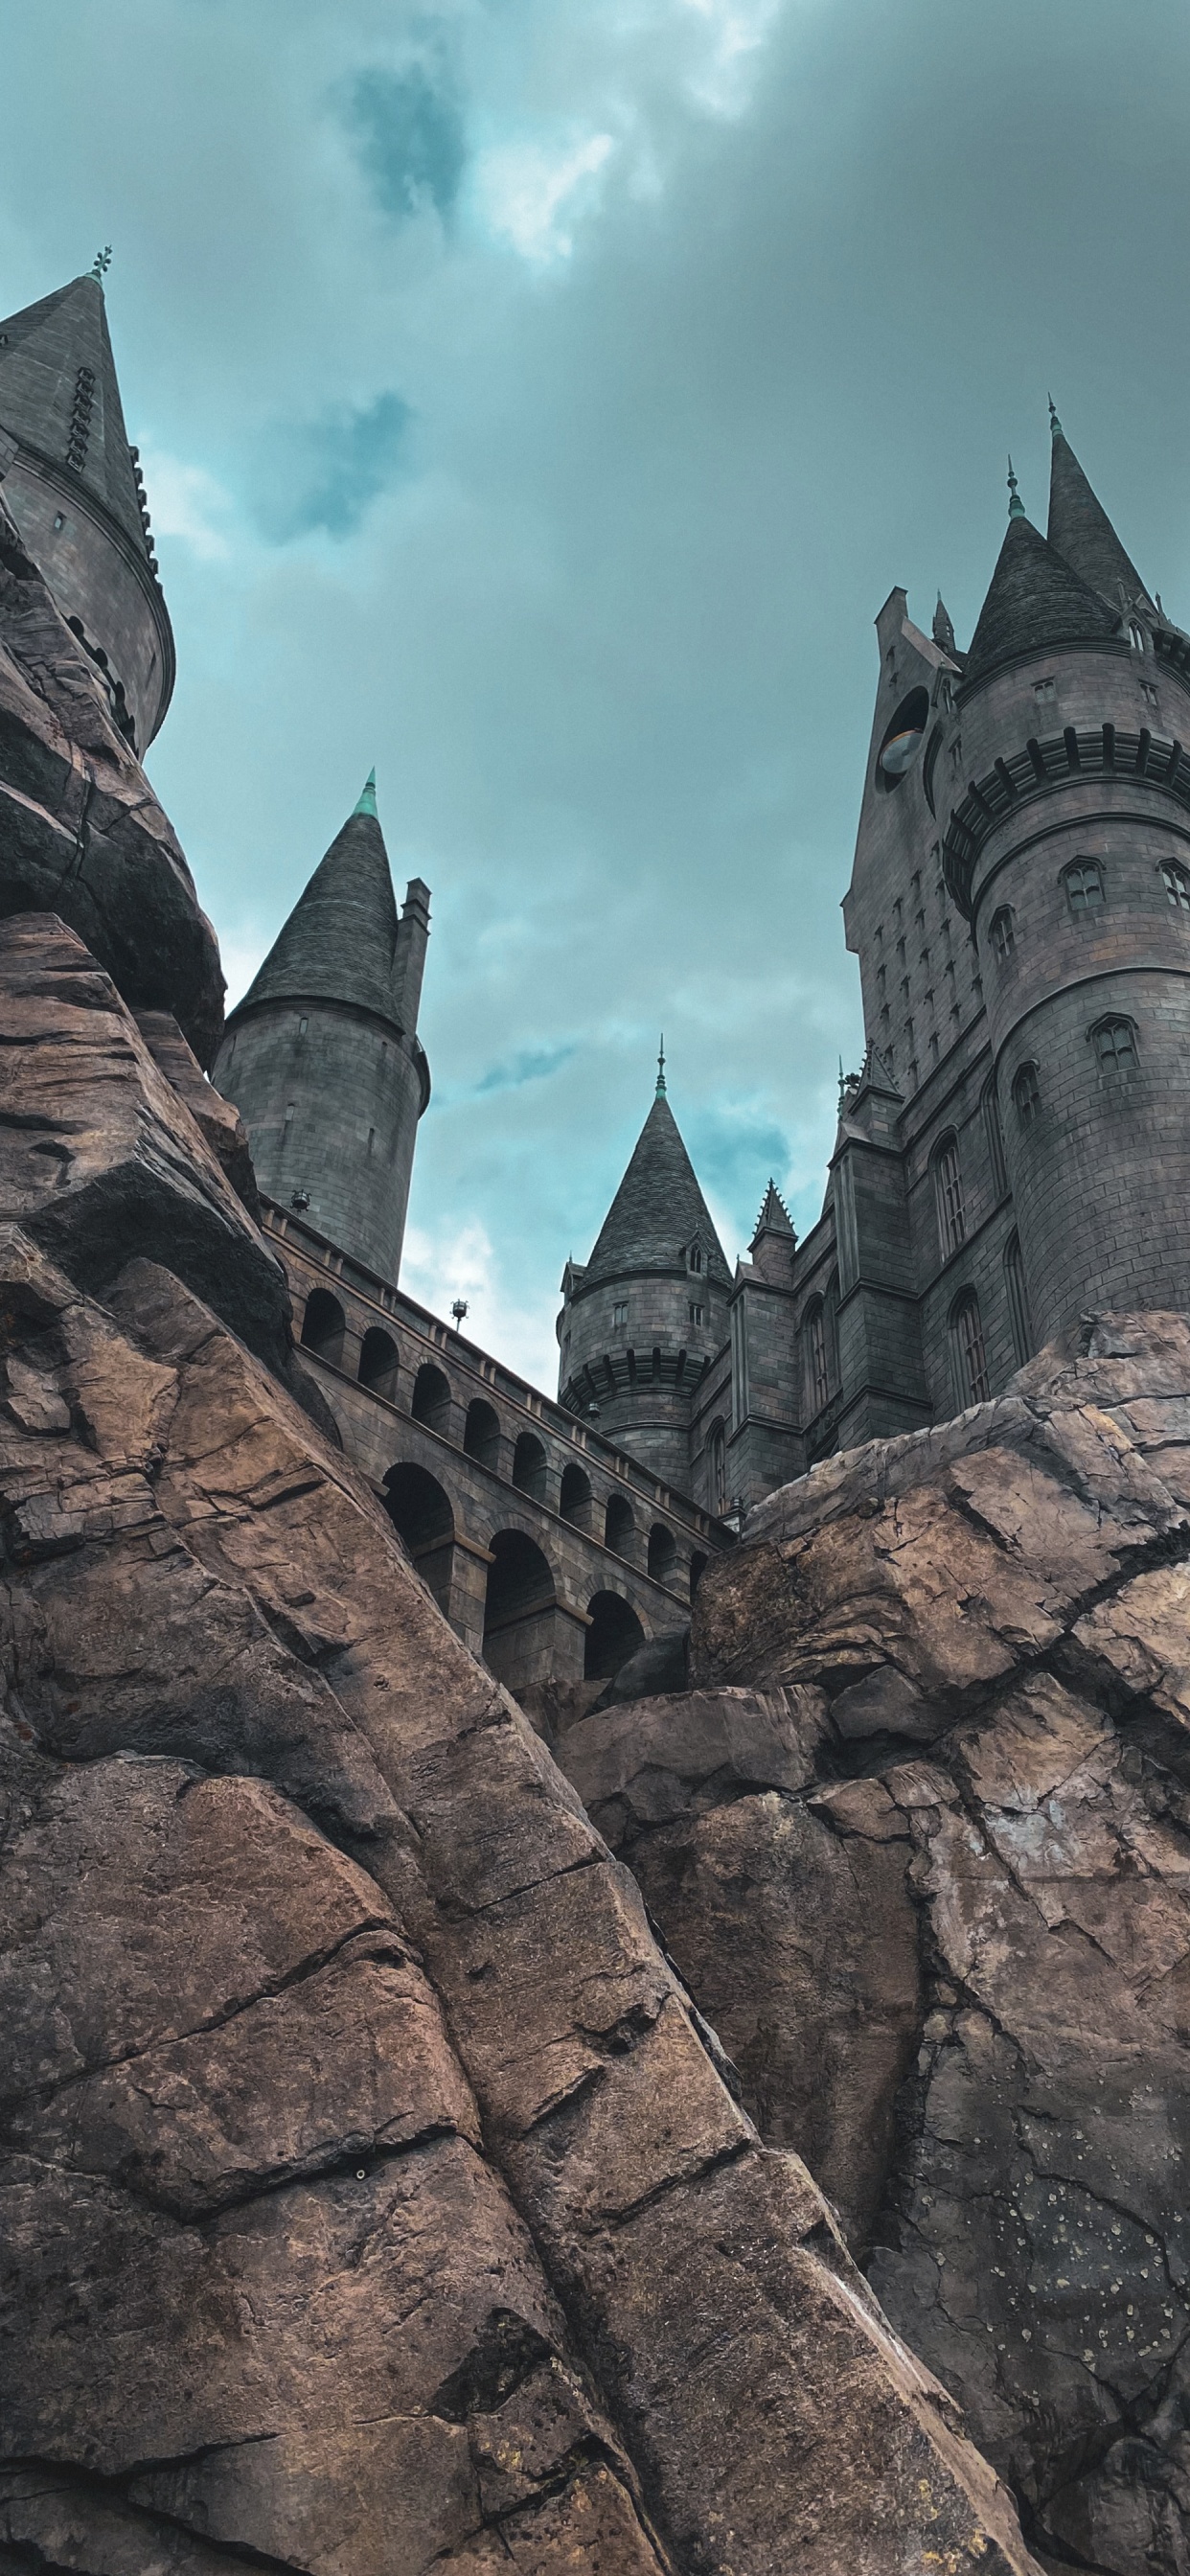 Hogwarts, 哈利*波特, 魔法世界, 斯莱特林的房子, 里程碑 壁纸 1242x2688 允许